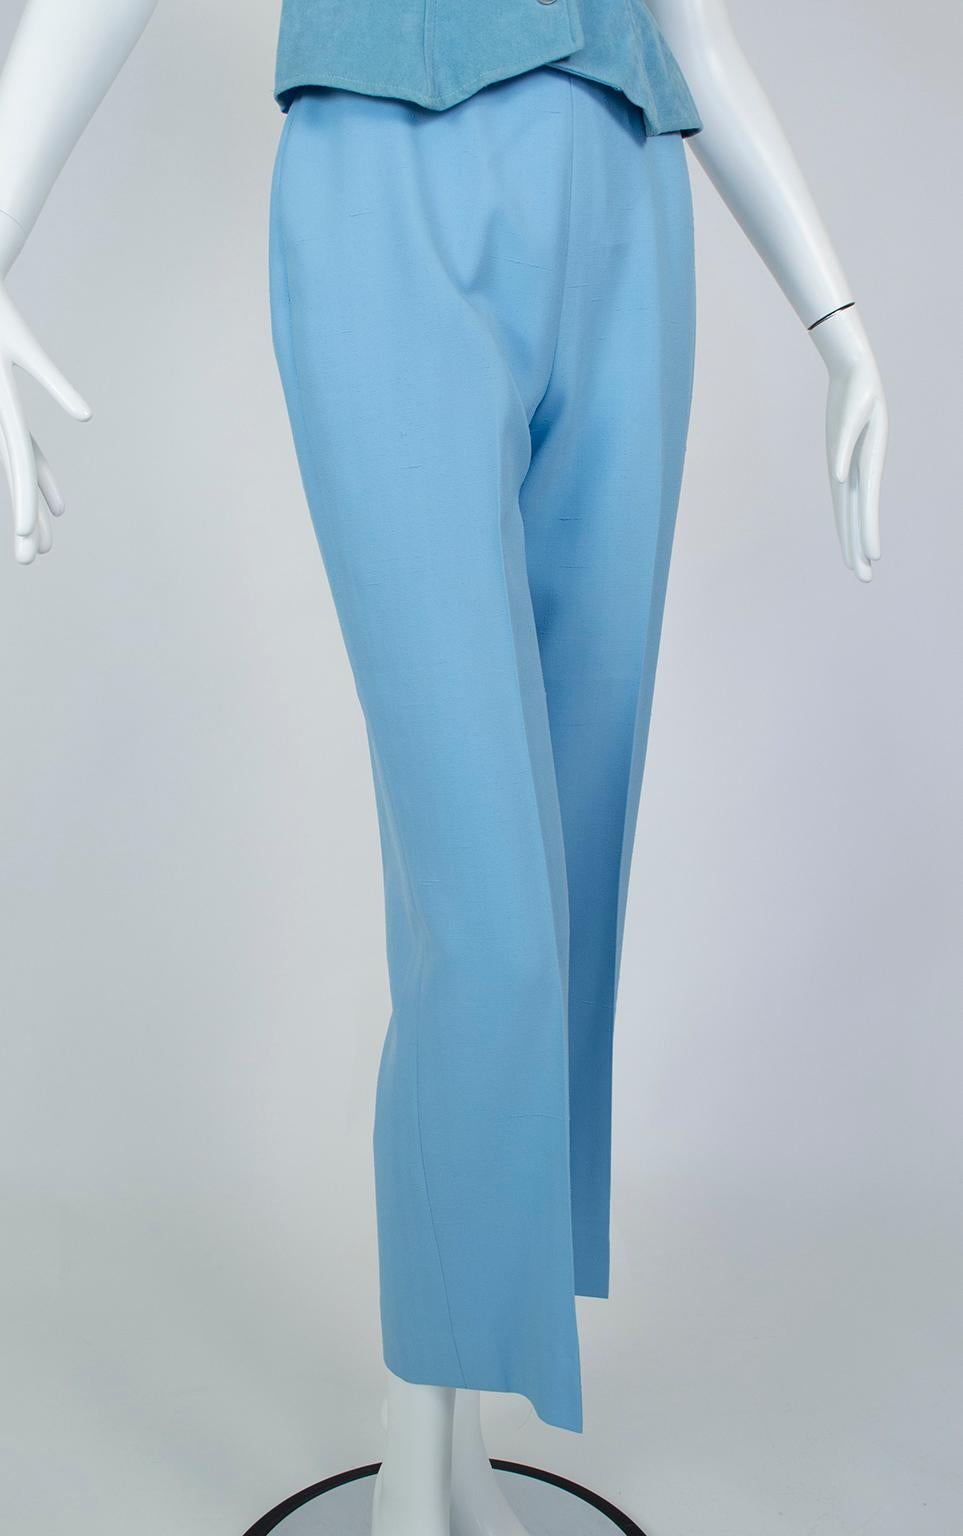 Lilli Ann Paris Powder Blue 3-Piece Western Pant Suit – XS, 1970s For Sale 9